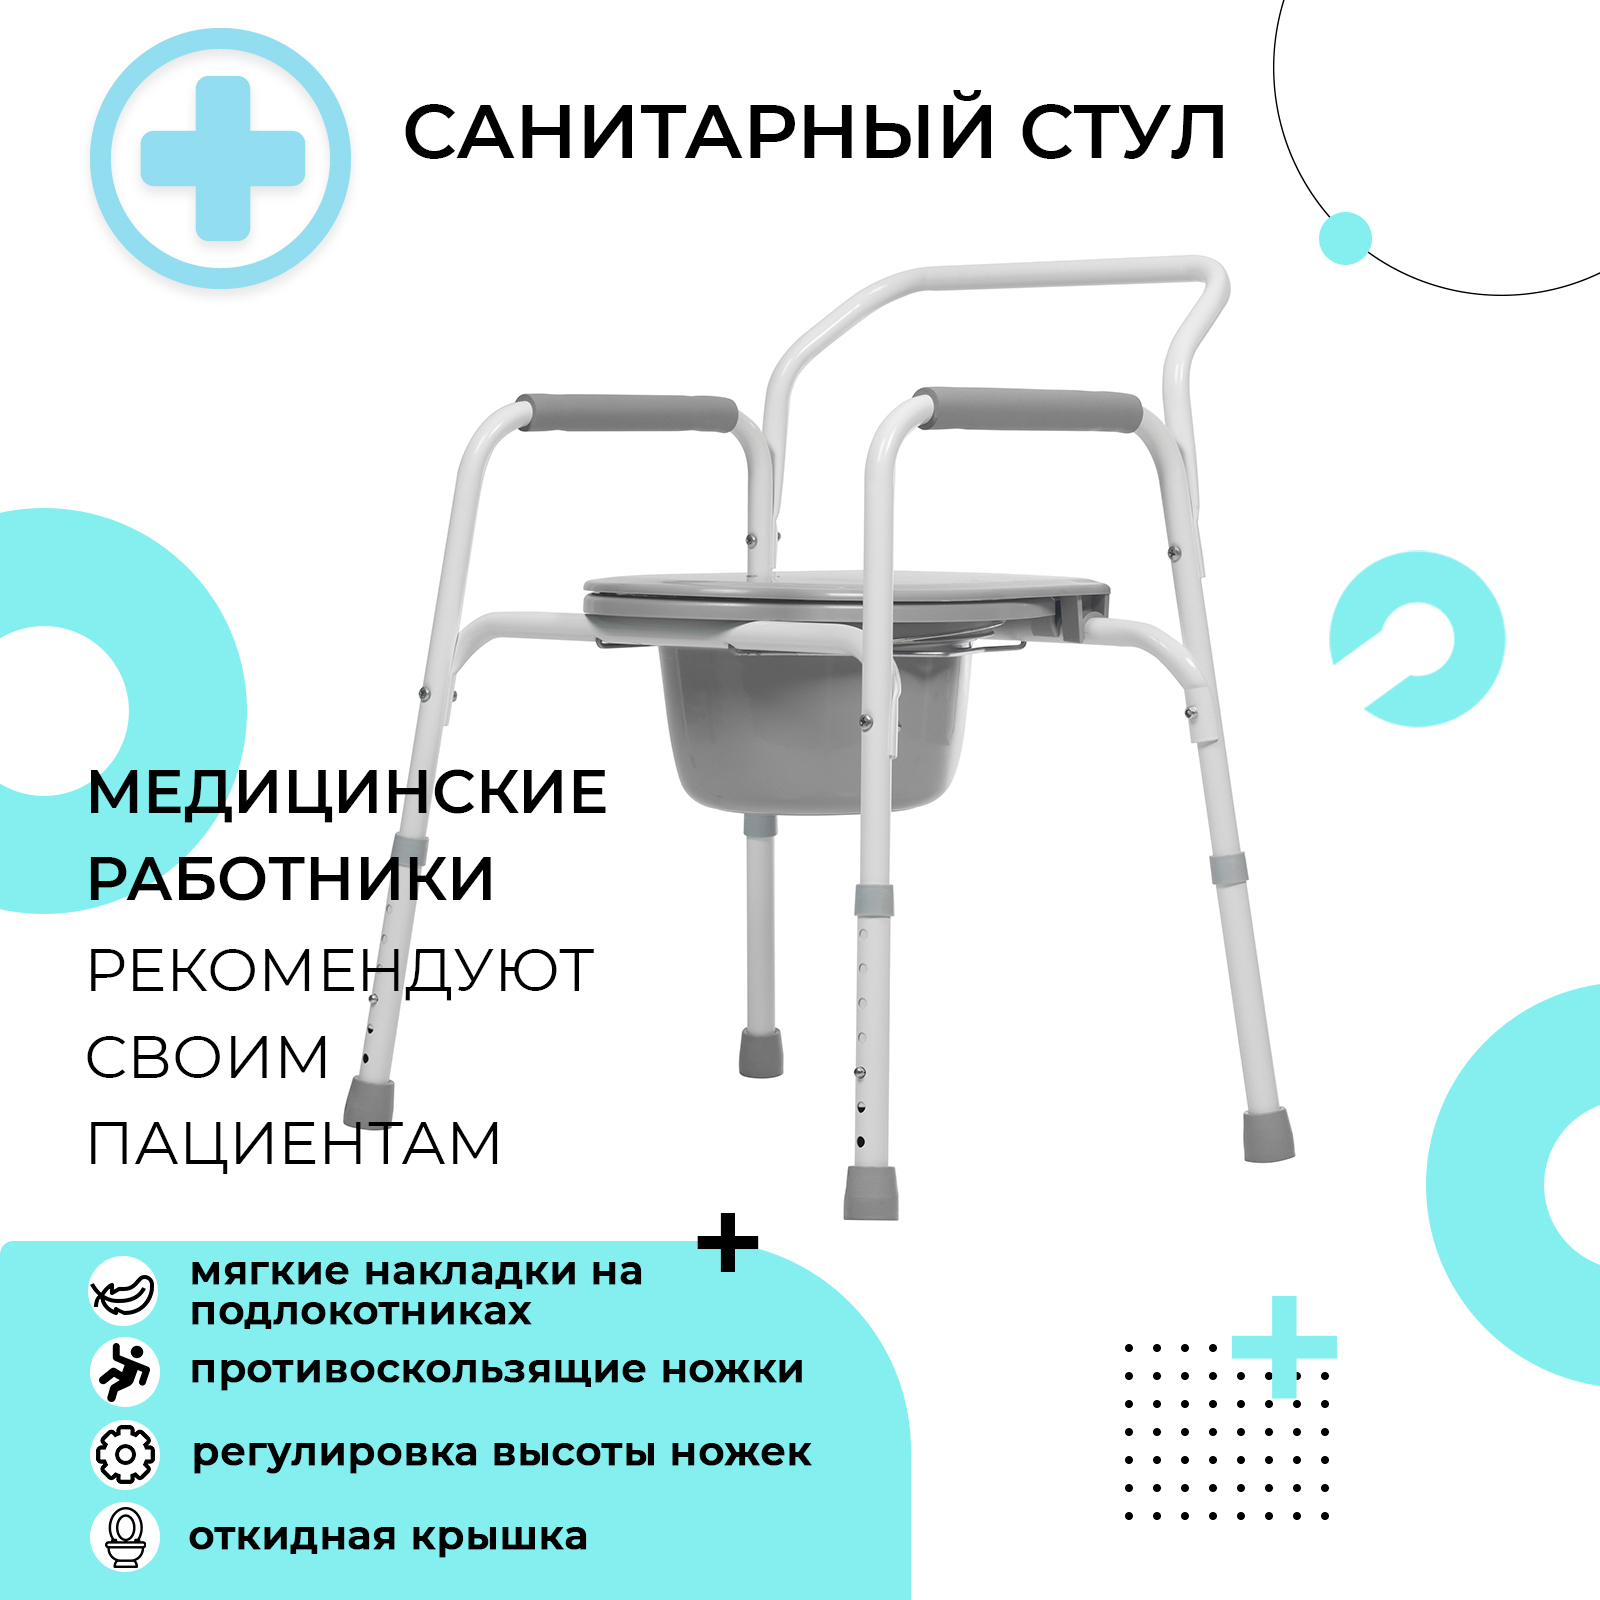 Кресло-стул с санитарным оснащением Care RPM 68100 (CSC 16a)